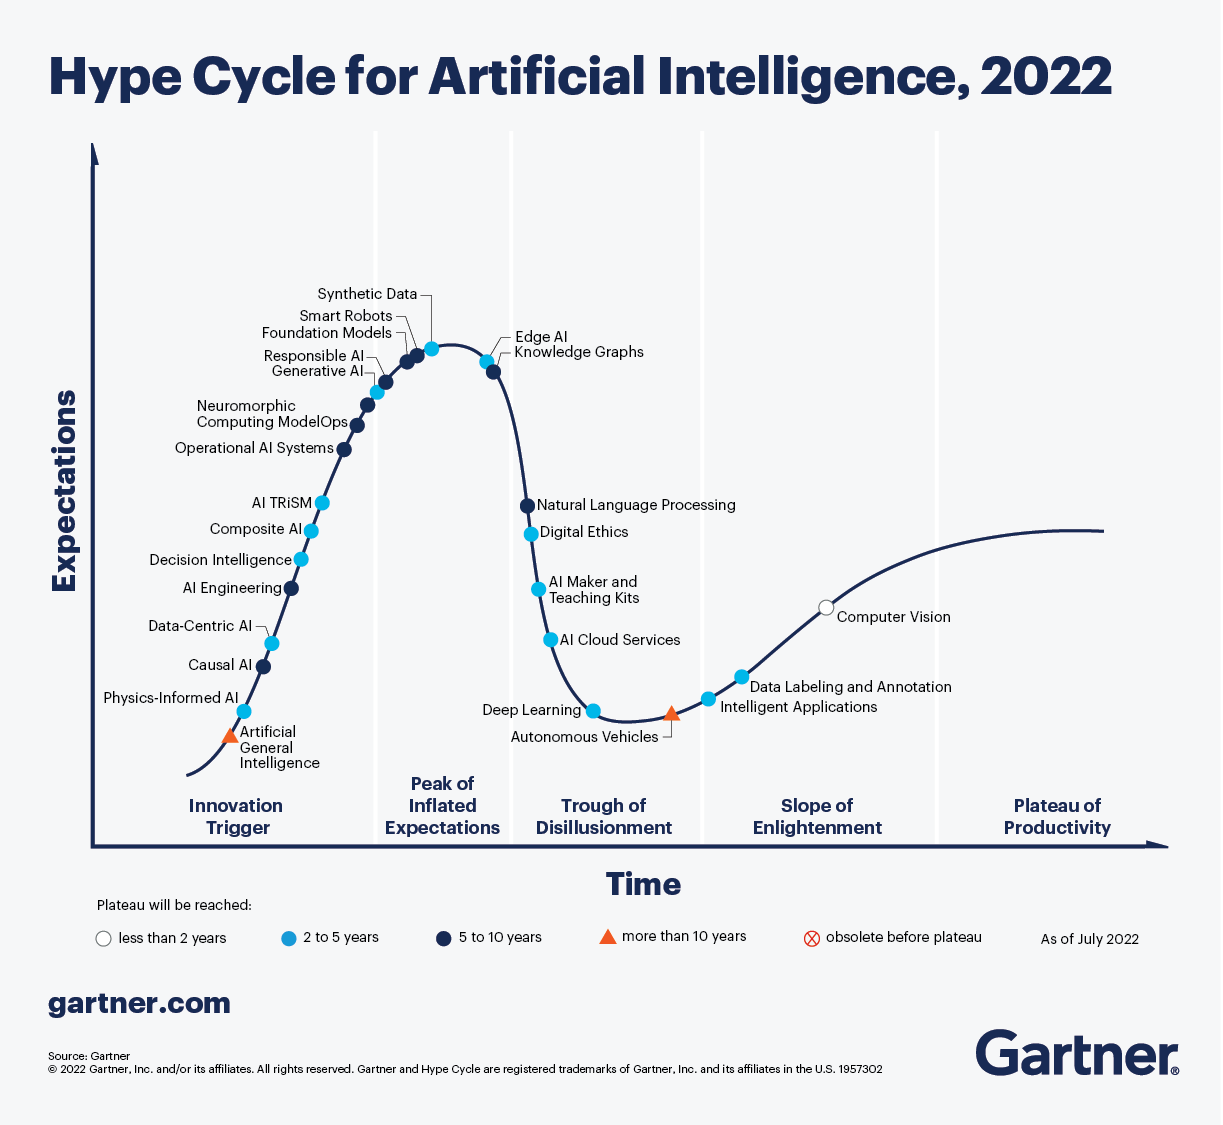 Hype-Curve de Garte para inteligencia artificial para el 2022